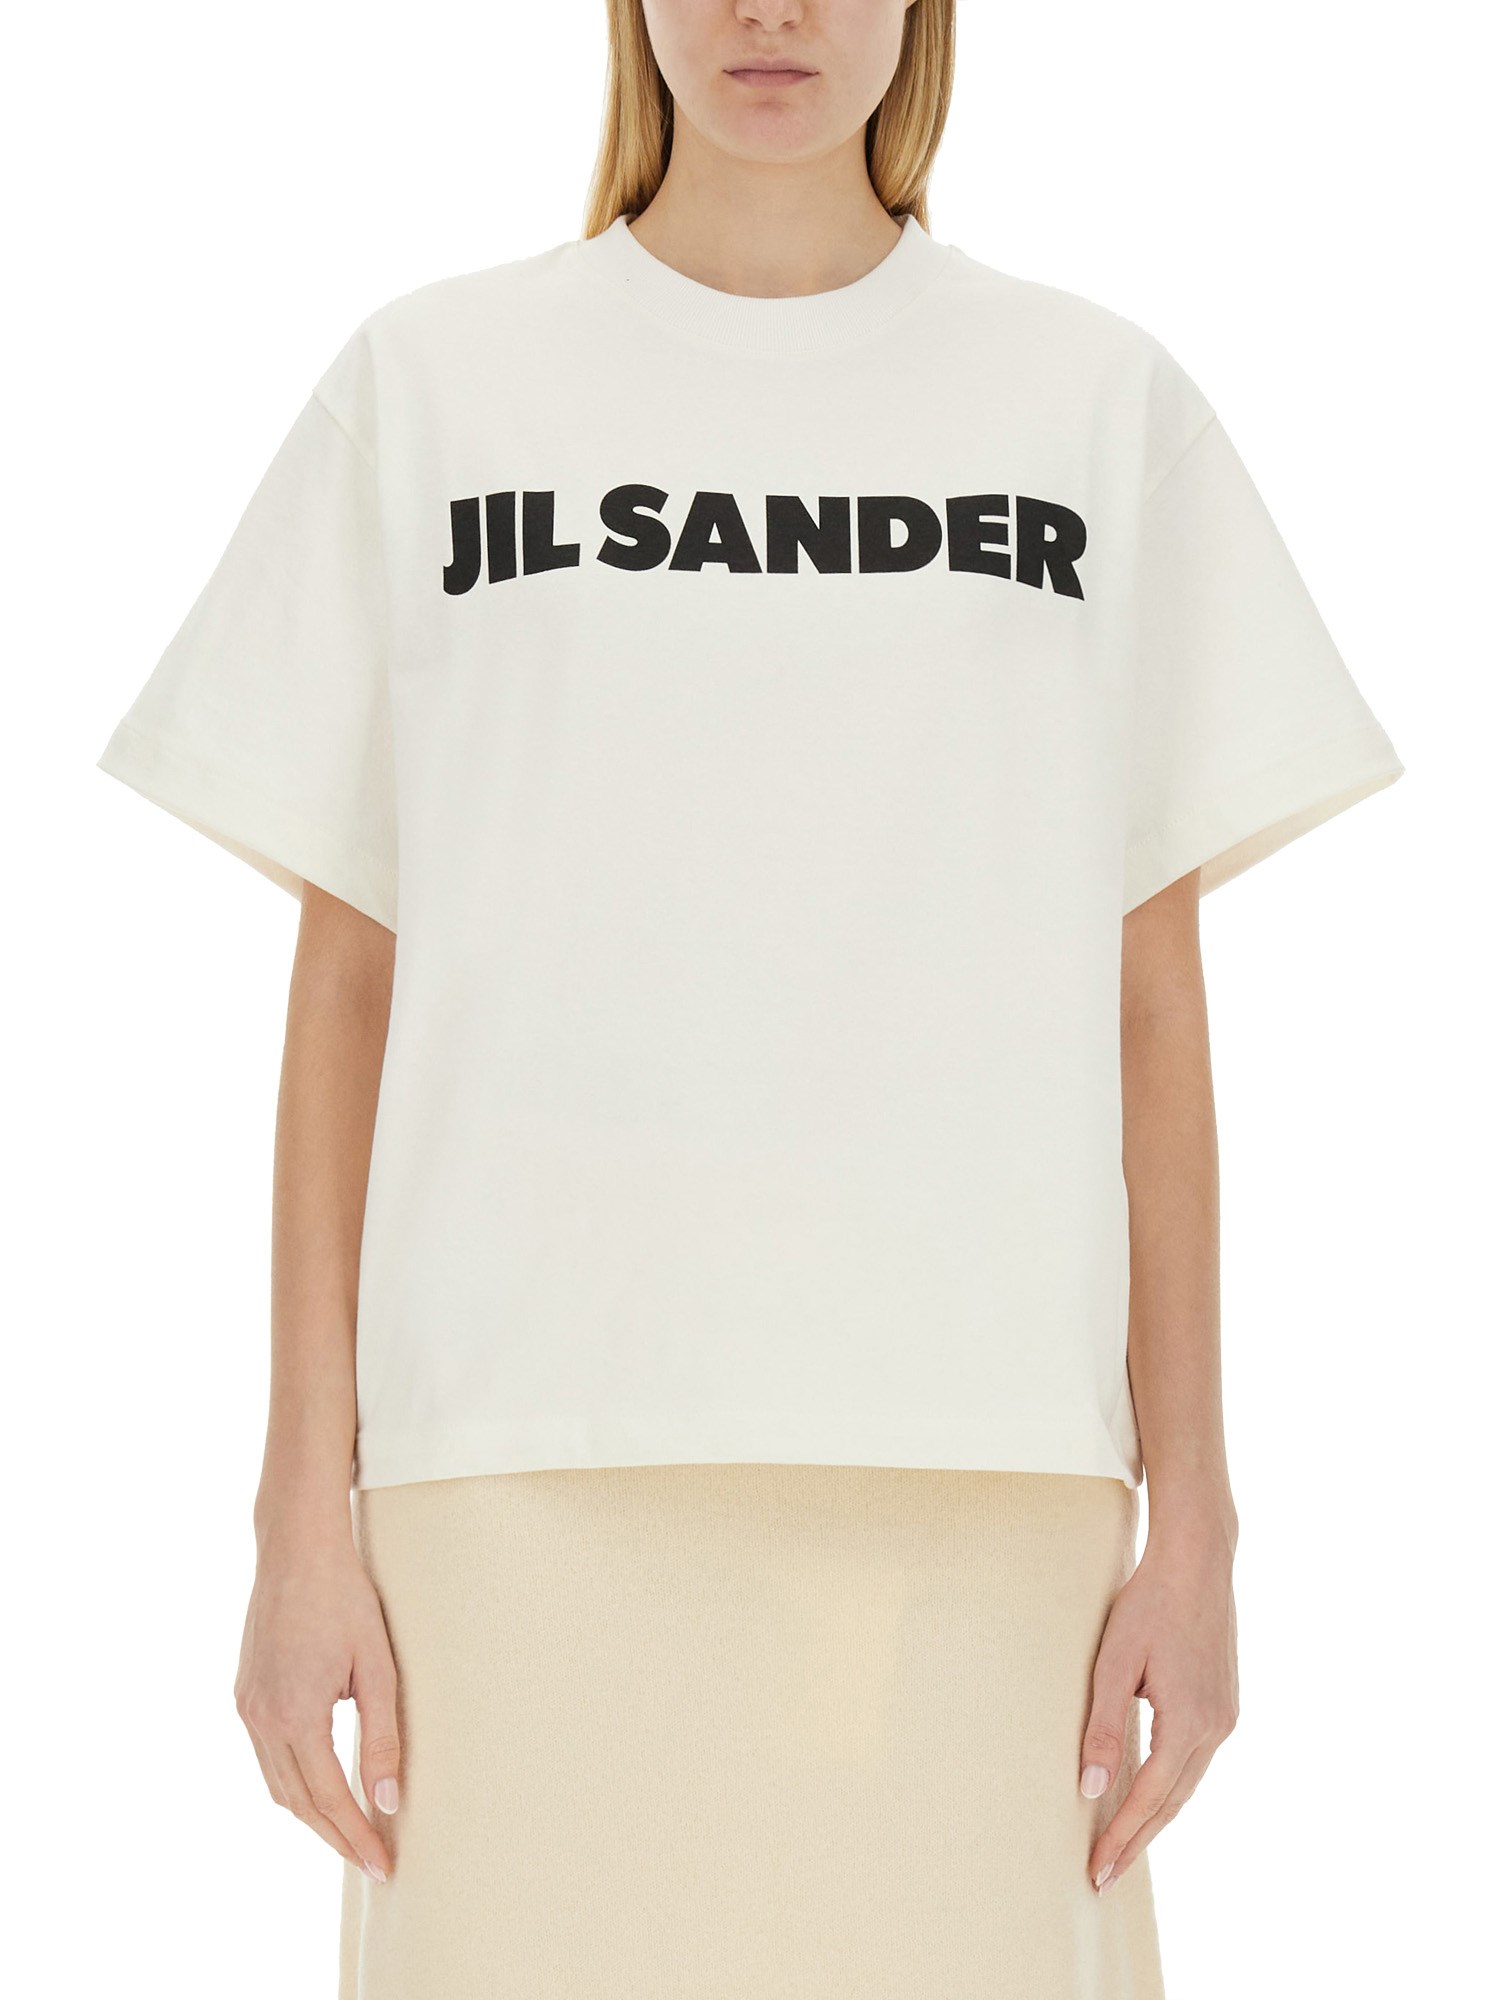 Jil Sander jil sander t-shirt with logo